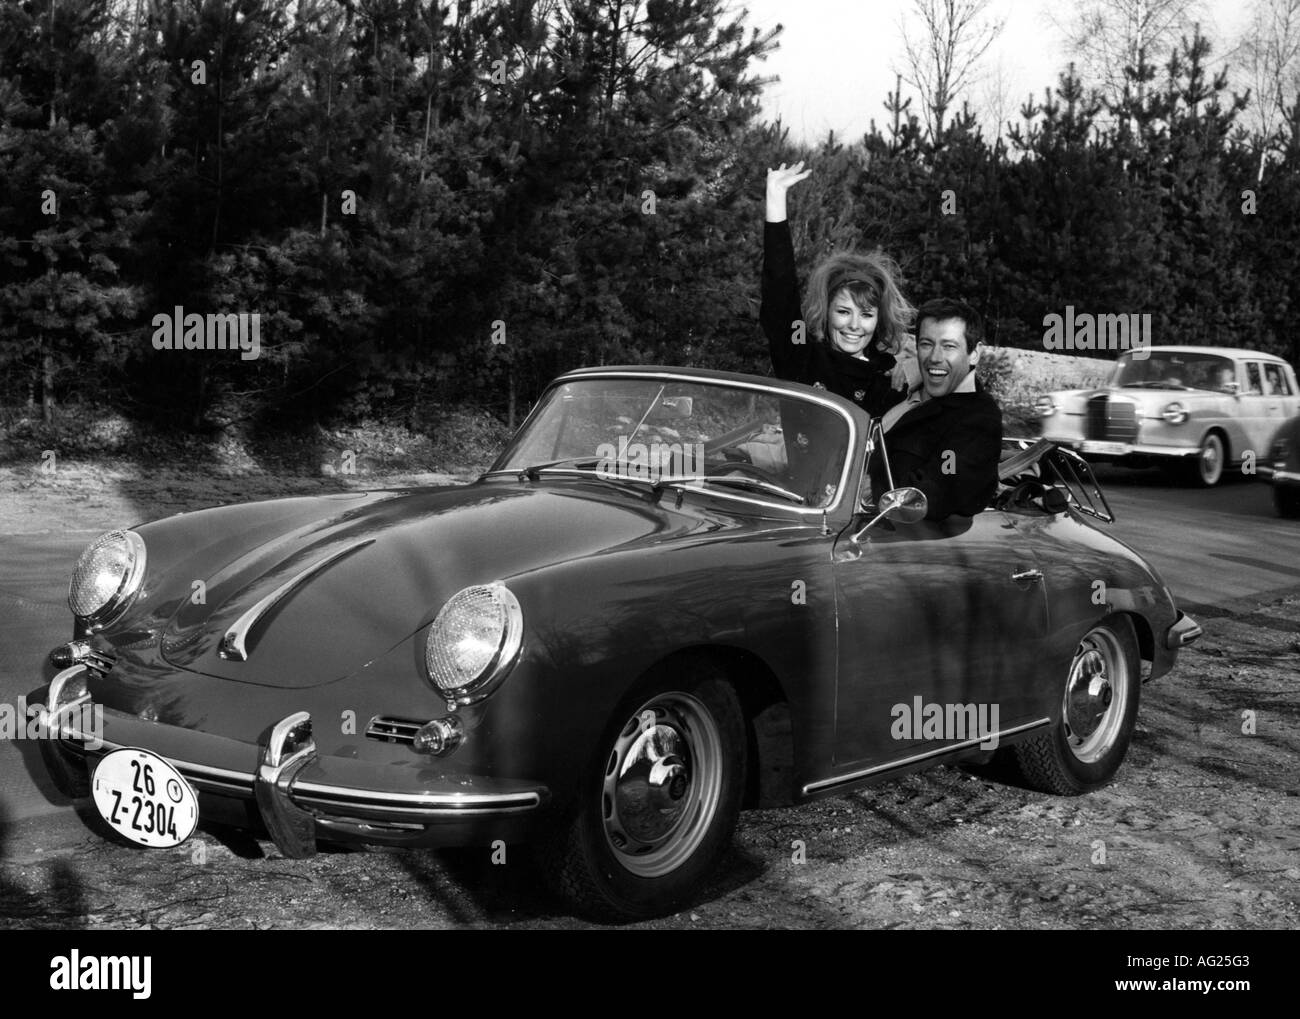 Schönherr, Dietmar, 17.5.1926 - 18.7.2014, österreichischer Schauspieler, mit Vivi Bach, im Auto sitzend (Porsche 356 B), 1960er Jahre, Stockfoto